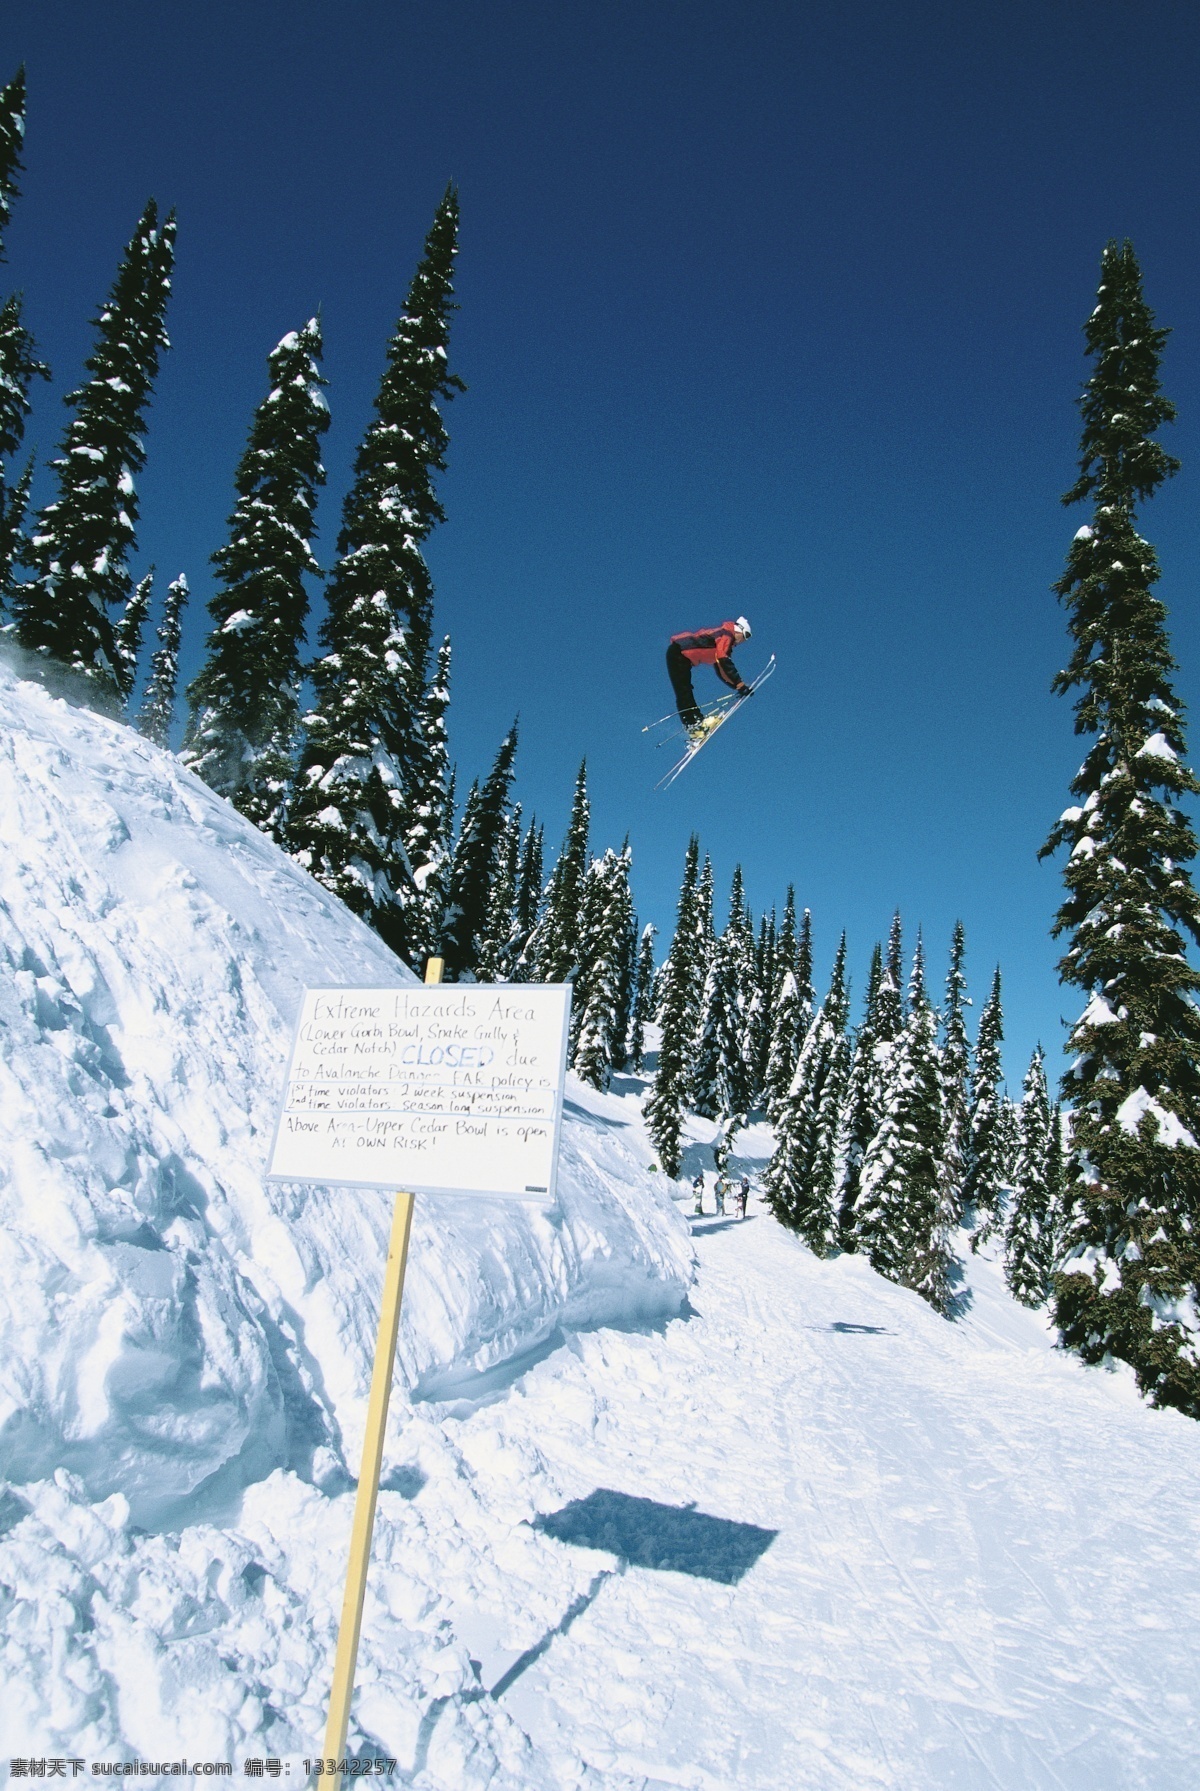 腾空 飞跃 滑雪 运动员 高清 雪地运动 划雪运动 极限运动 体育项目 下滑 速度 运动图片 生活百科 雪山 风景 摄影图片 高清图片 体育运动 白色